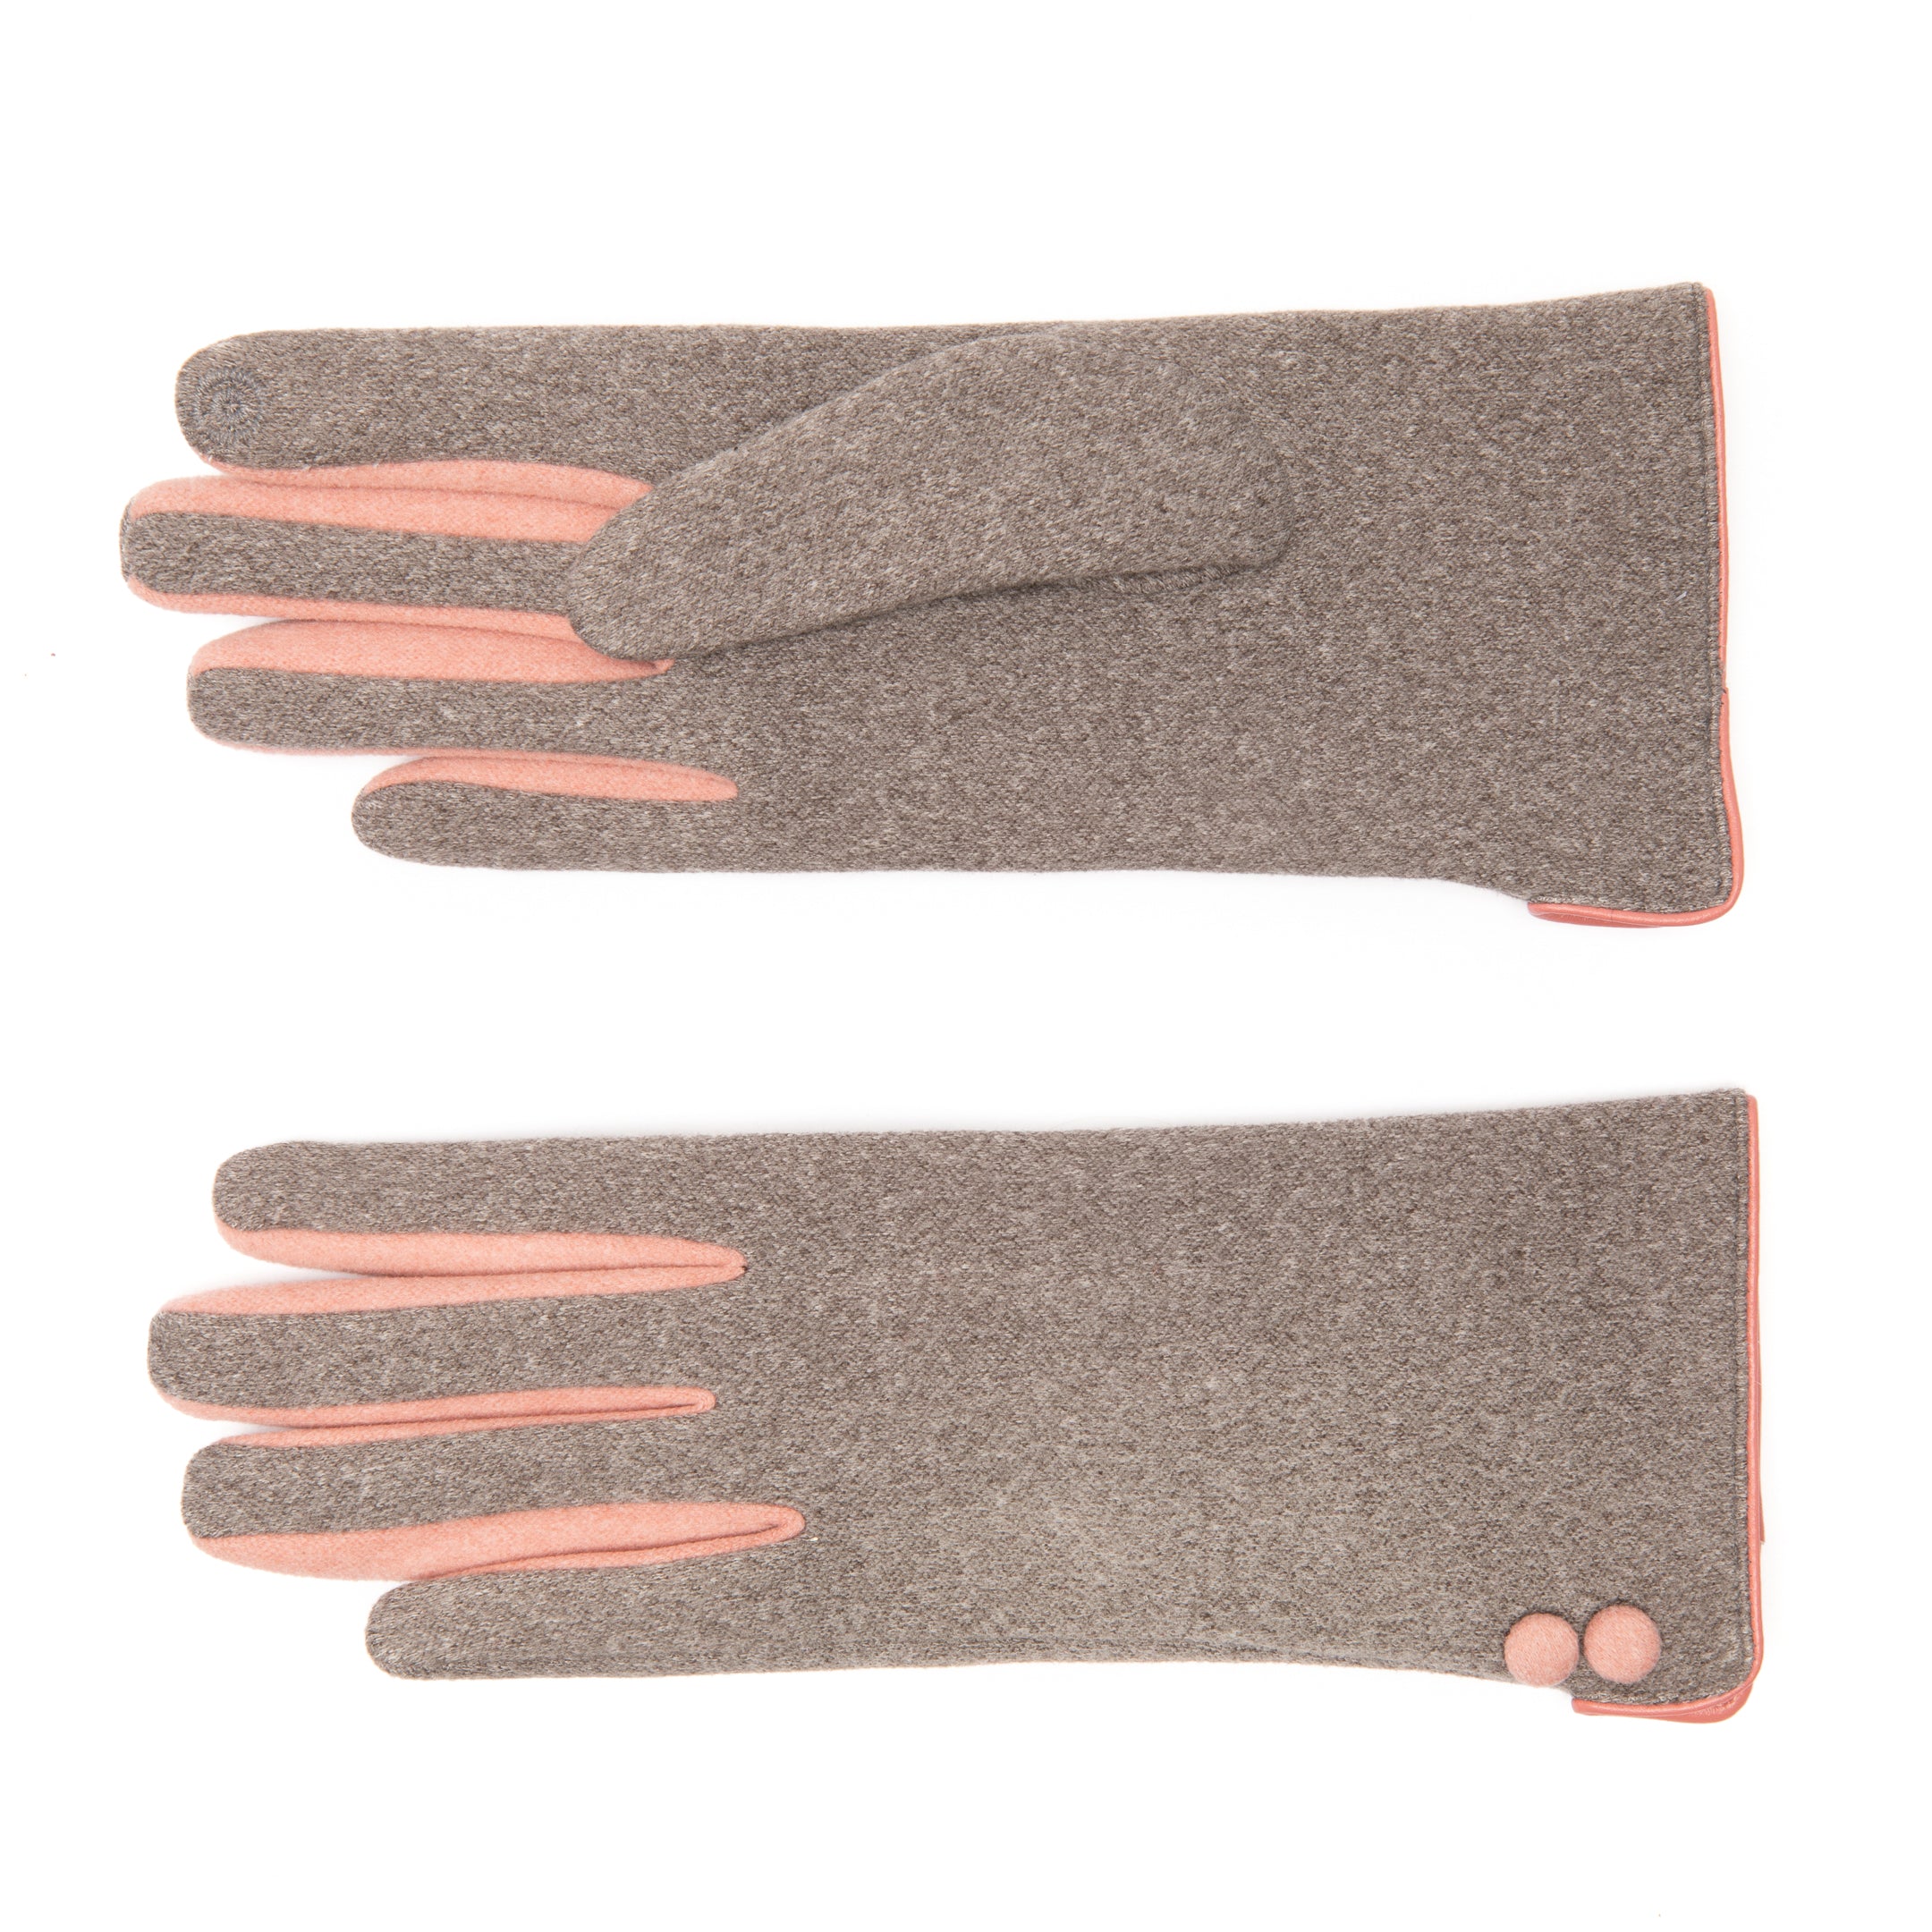 EEM Damenhandschuhe 100% vegan, weiches elastisches Jerseymaterial, Touchfunktion, kuscheliges Futter aus Teddyfleece